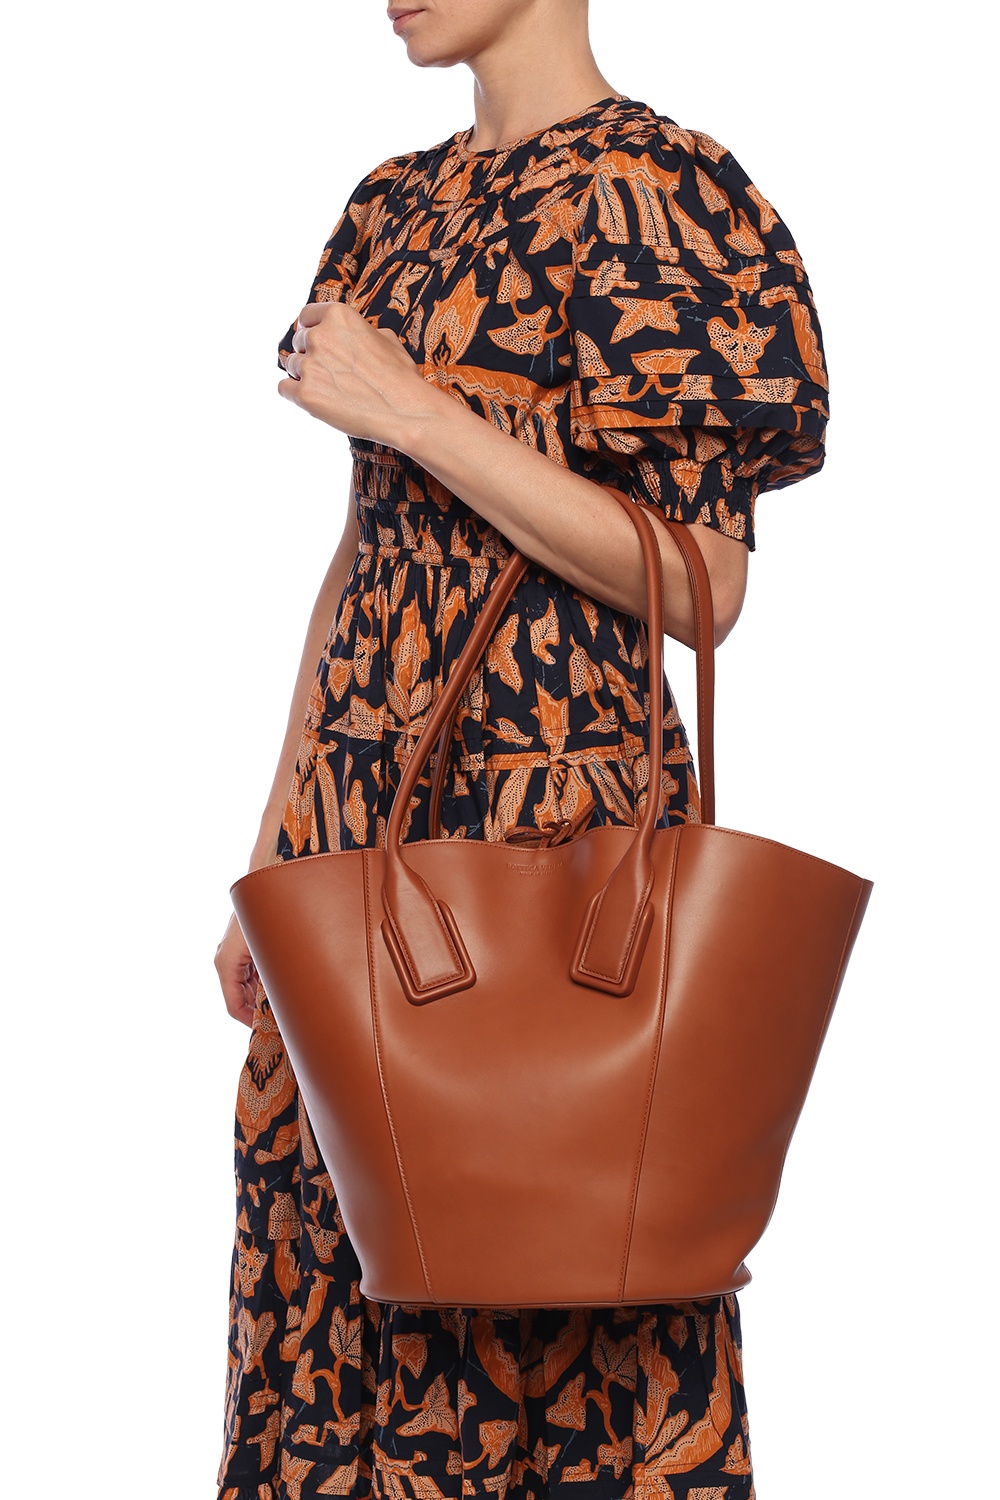 Bottega Veneta Roma Handbag in Brown Intrecciato Leather